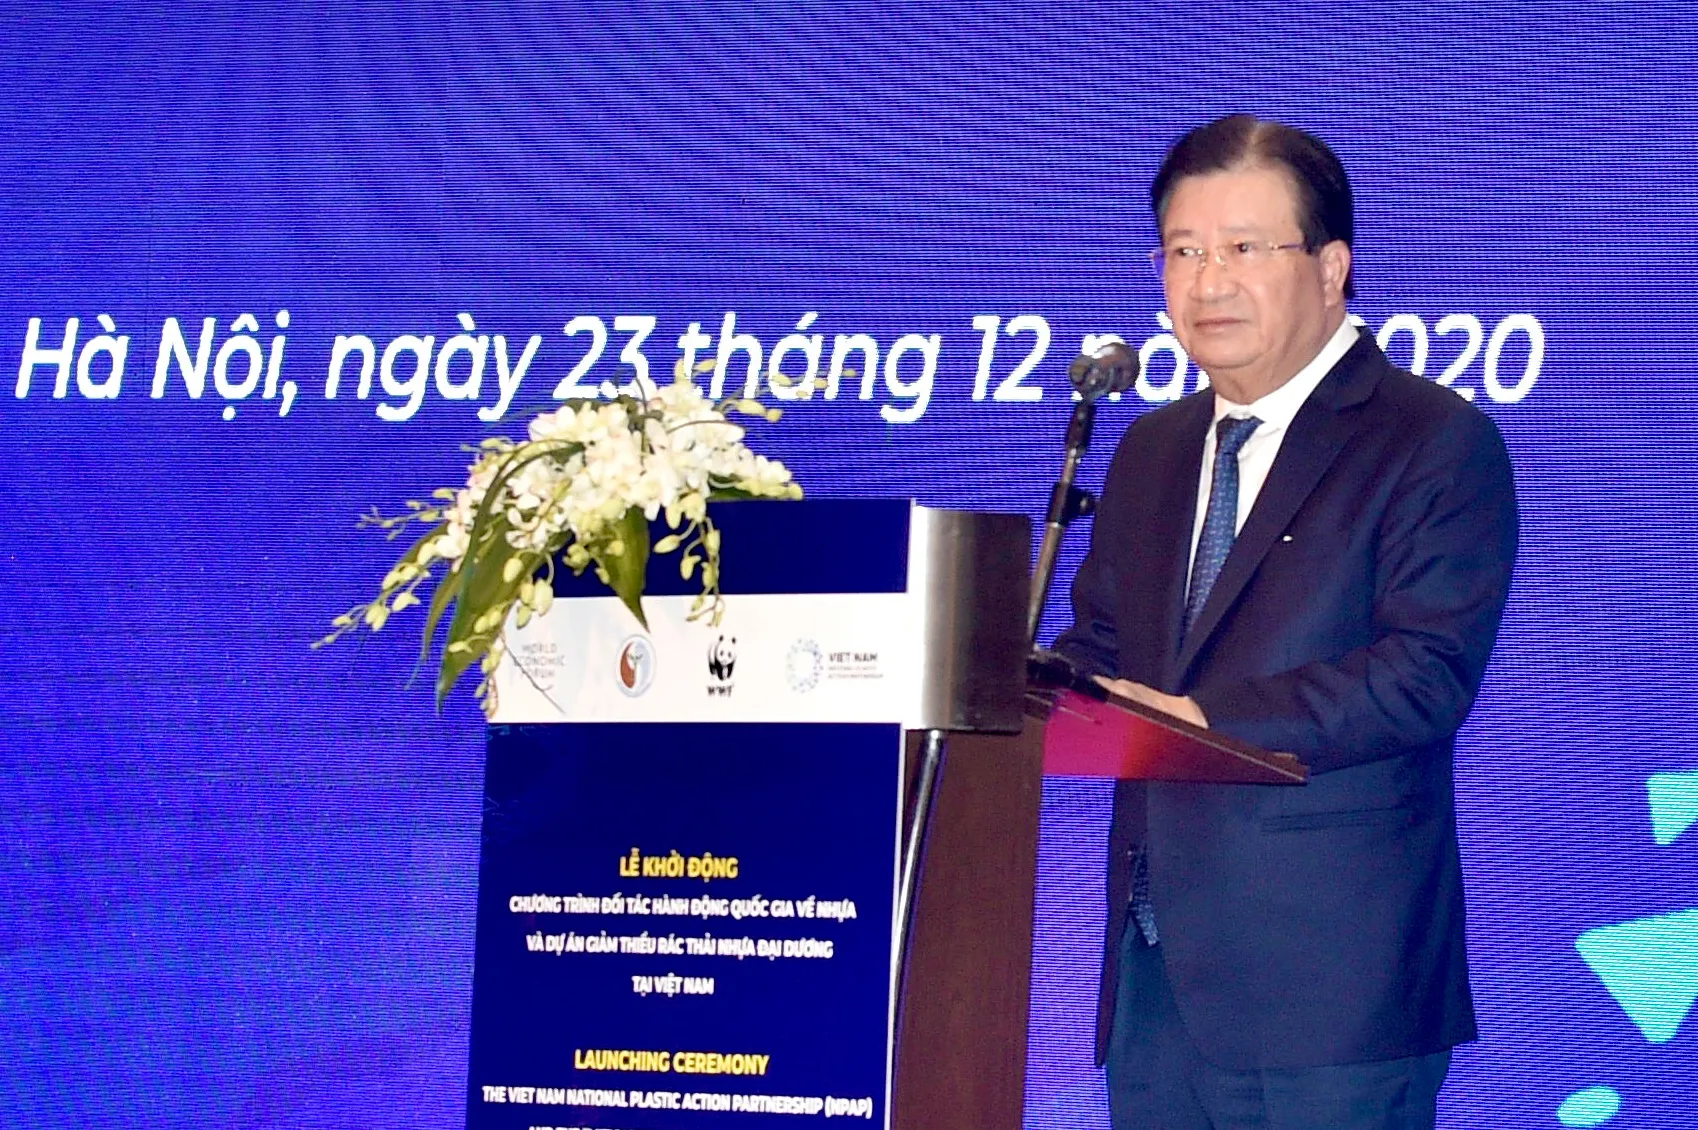 Phó Thủ tướng Trịnh Đình Dũng phát biểu tại lễ khởi động chương trình Đối tác Hành động Quốc gia về Nhựa tại Việt Nam NPAP.